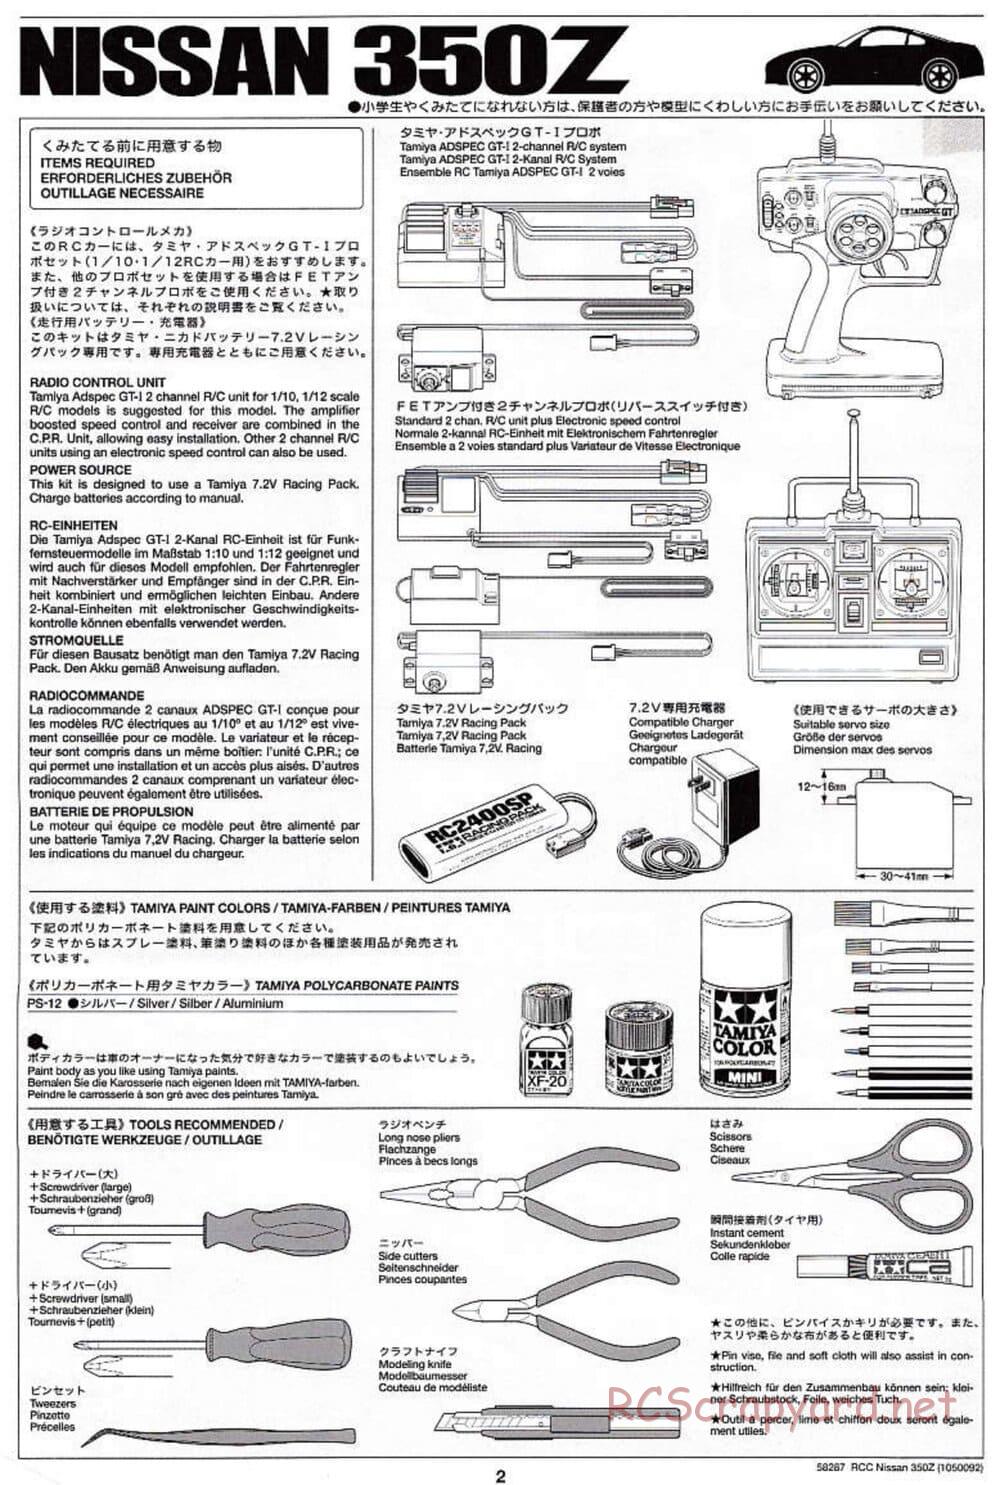 Tamiya - Nissan 350Z - TL-01 Chassis - Manual - Page 2